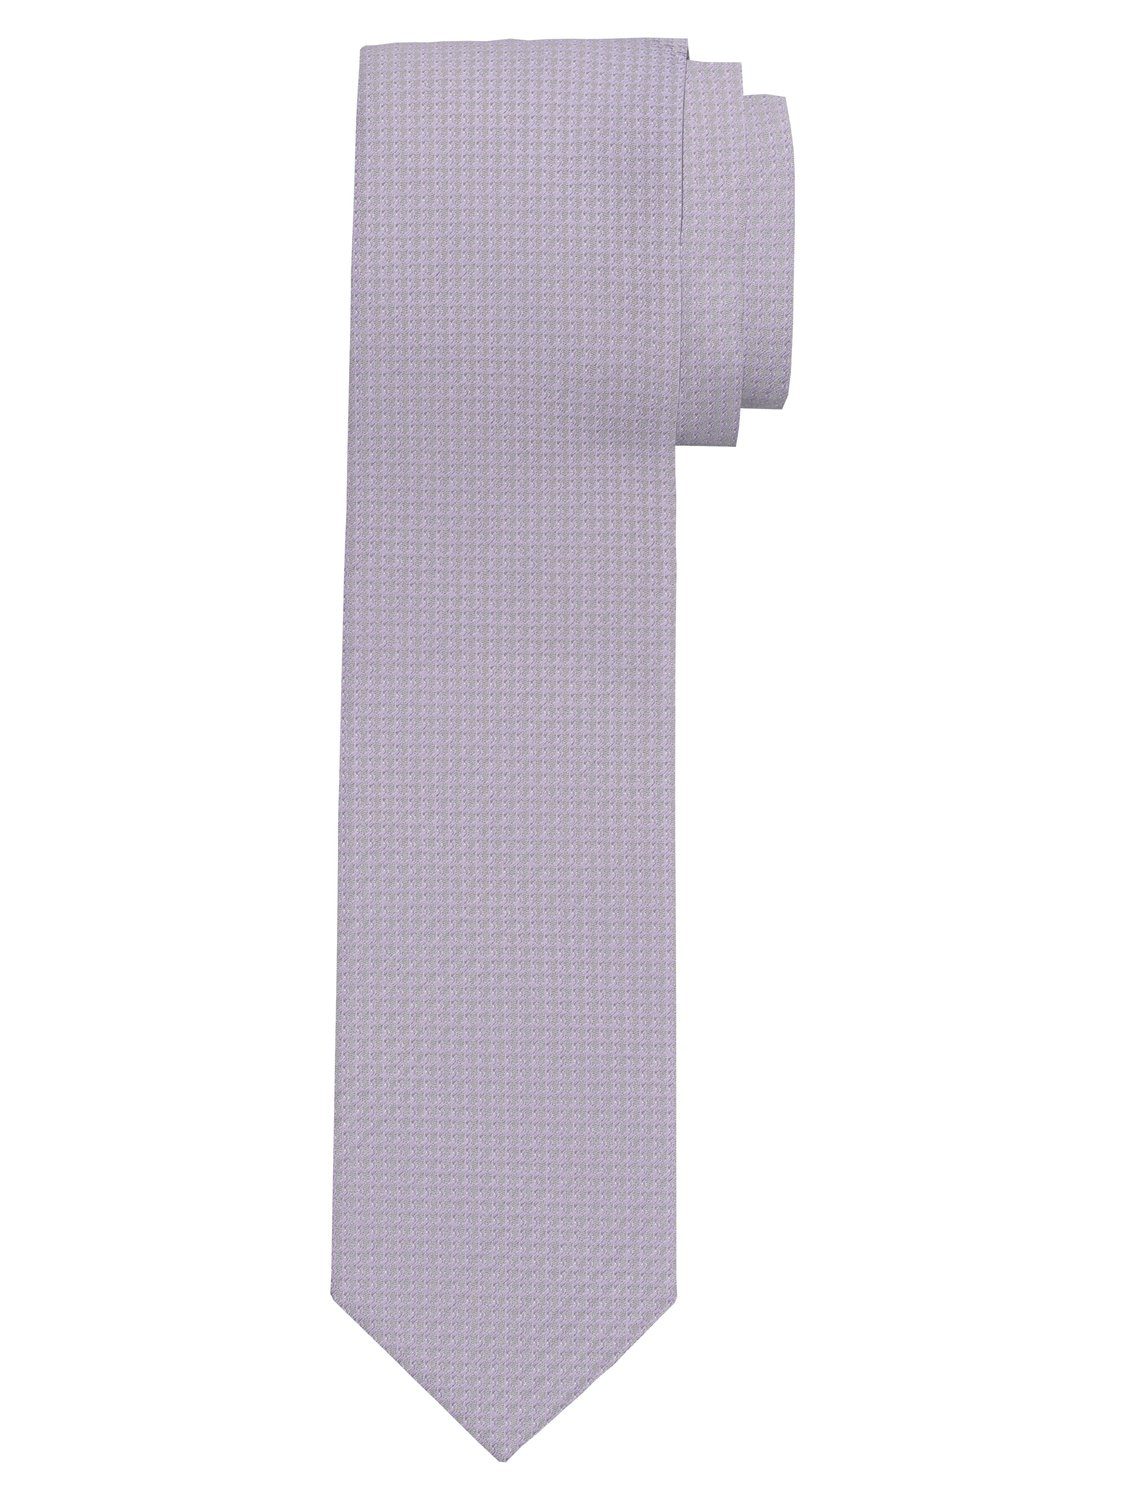 OLYMP Krawatte 1782/00 flieder Krawatten